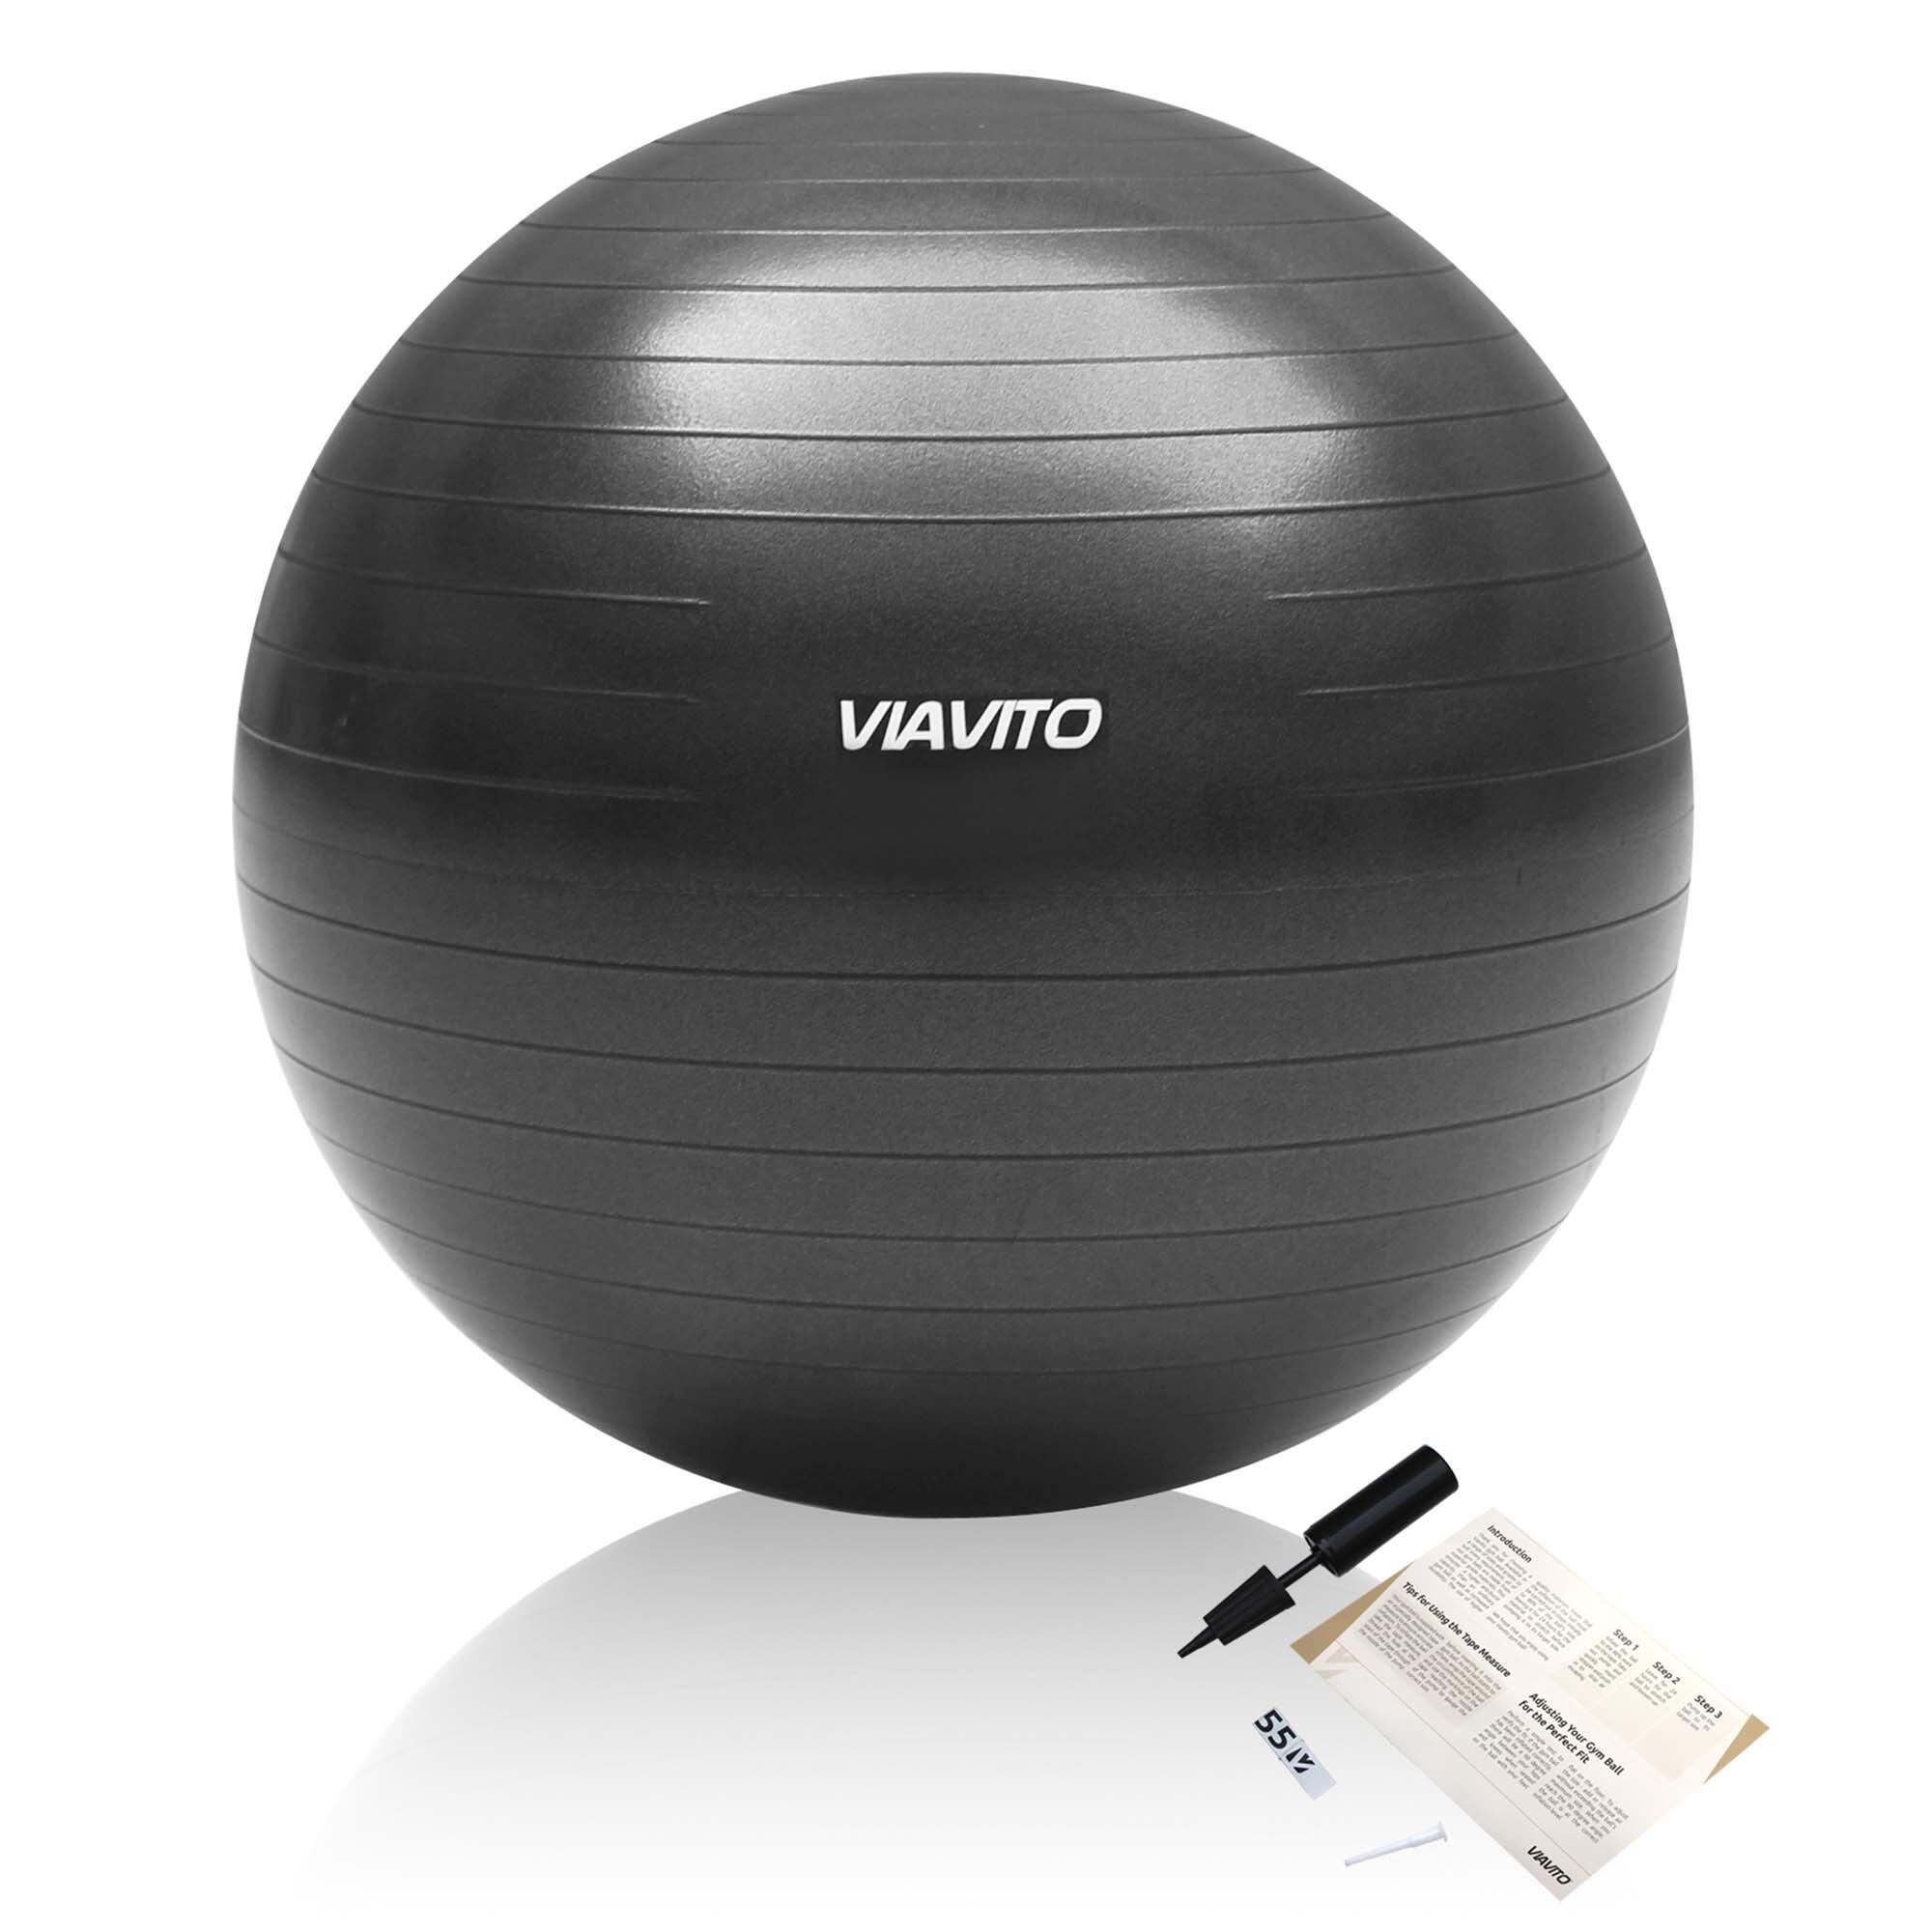 VIAVITO Viavito 55cm Studio Antiburst Gym Ball